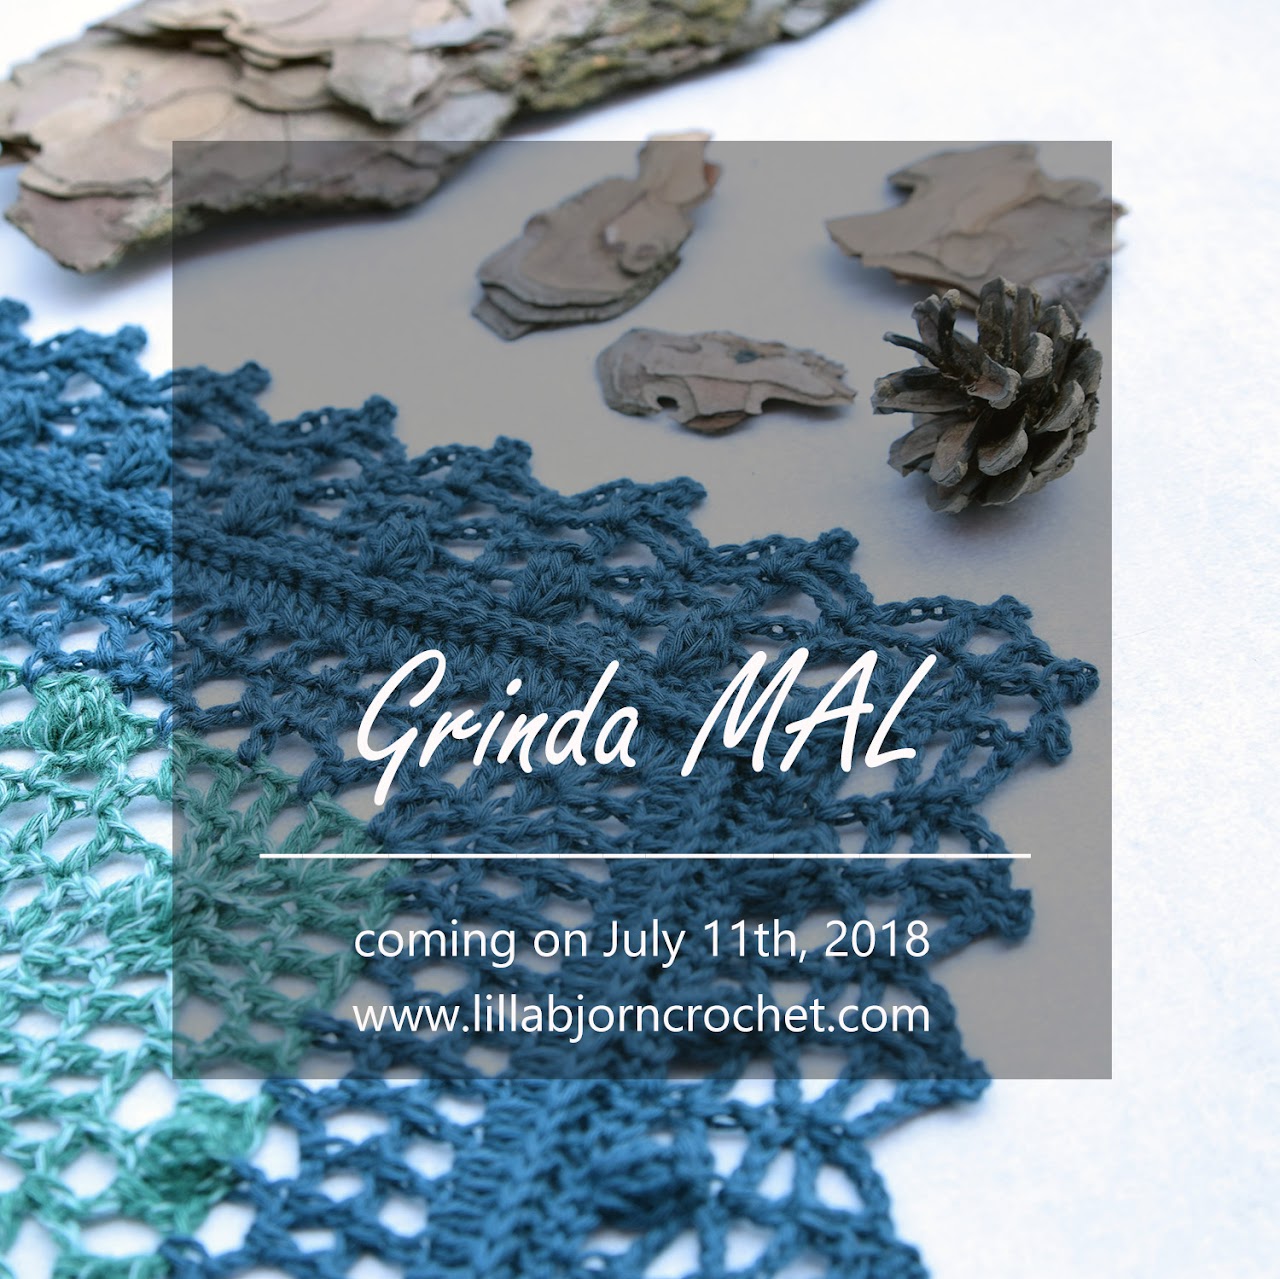 Grinda Shawl MAL - free crochet pattern by www.lillabjorncrochet.com